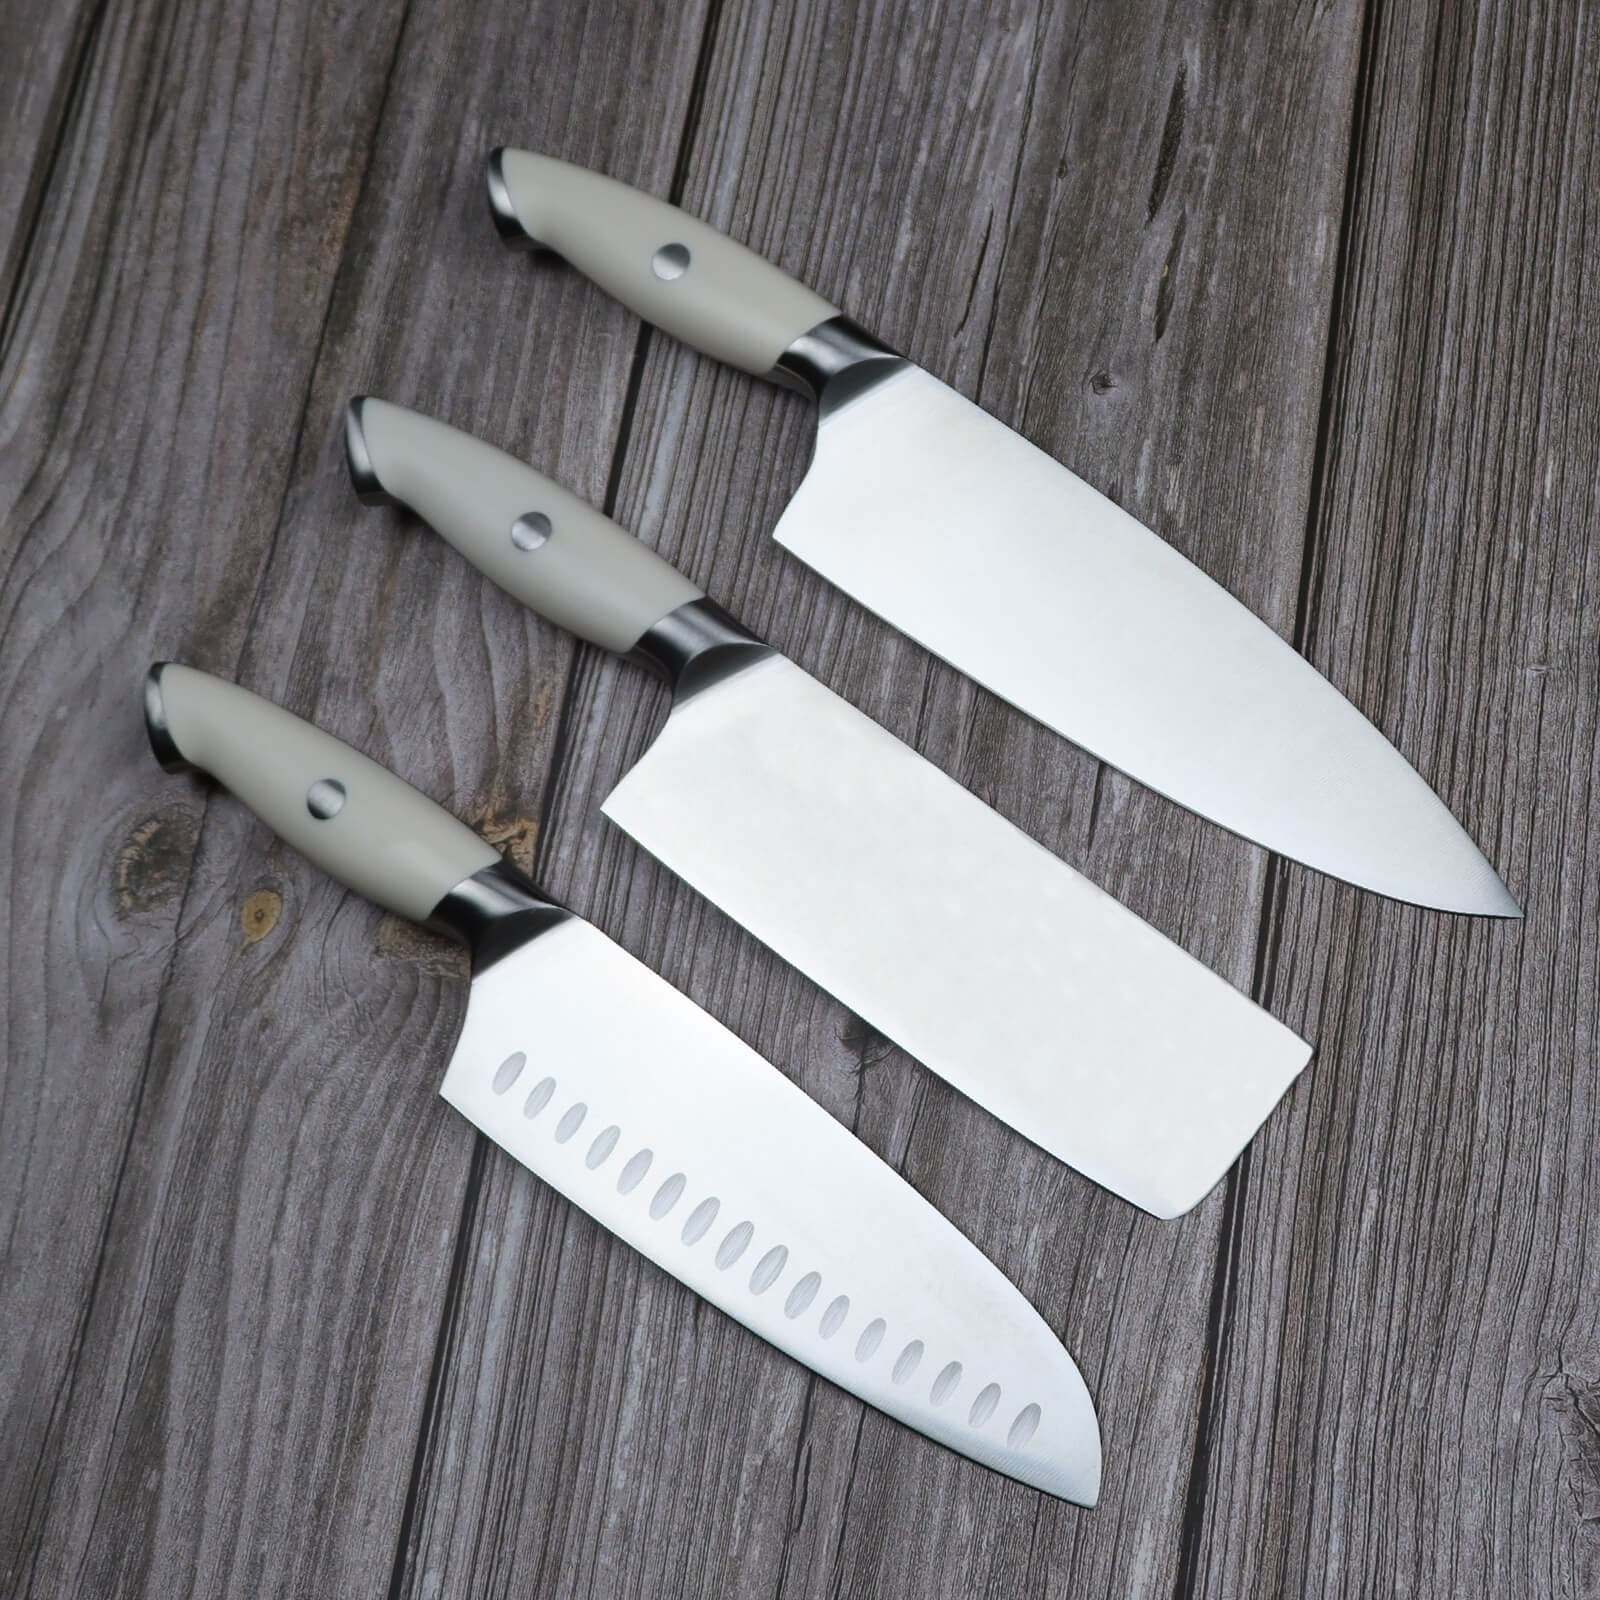 Fzkaly 3 Piece Chef Knife Set